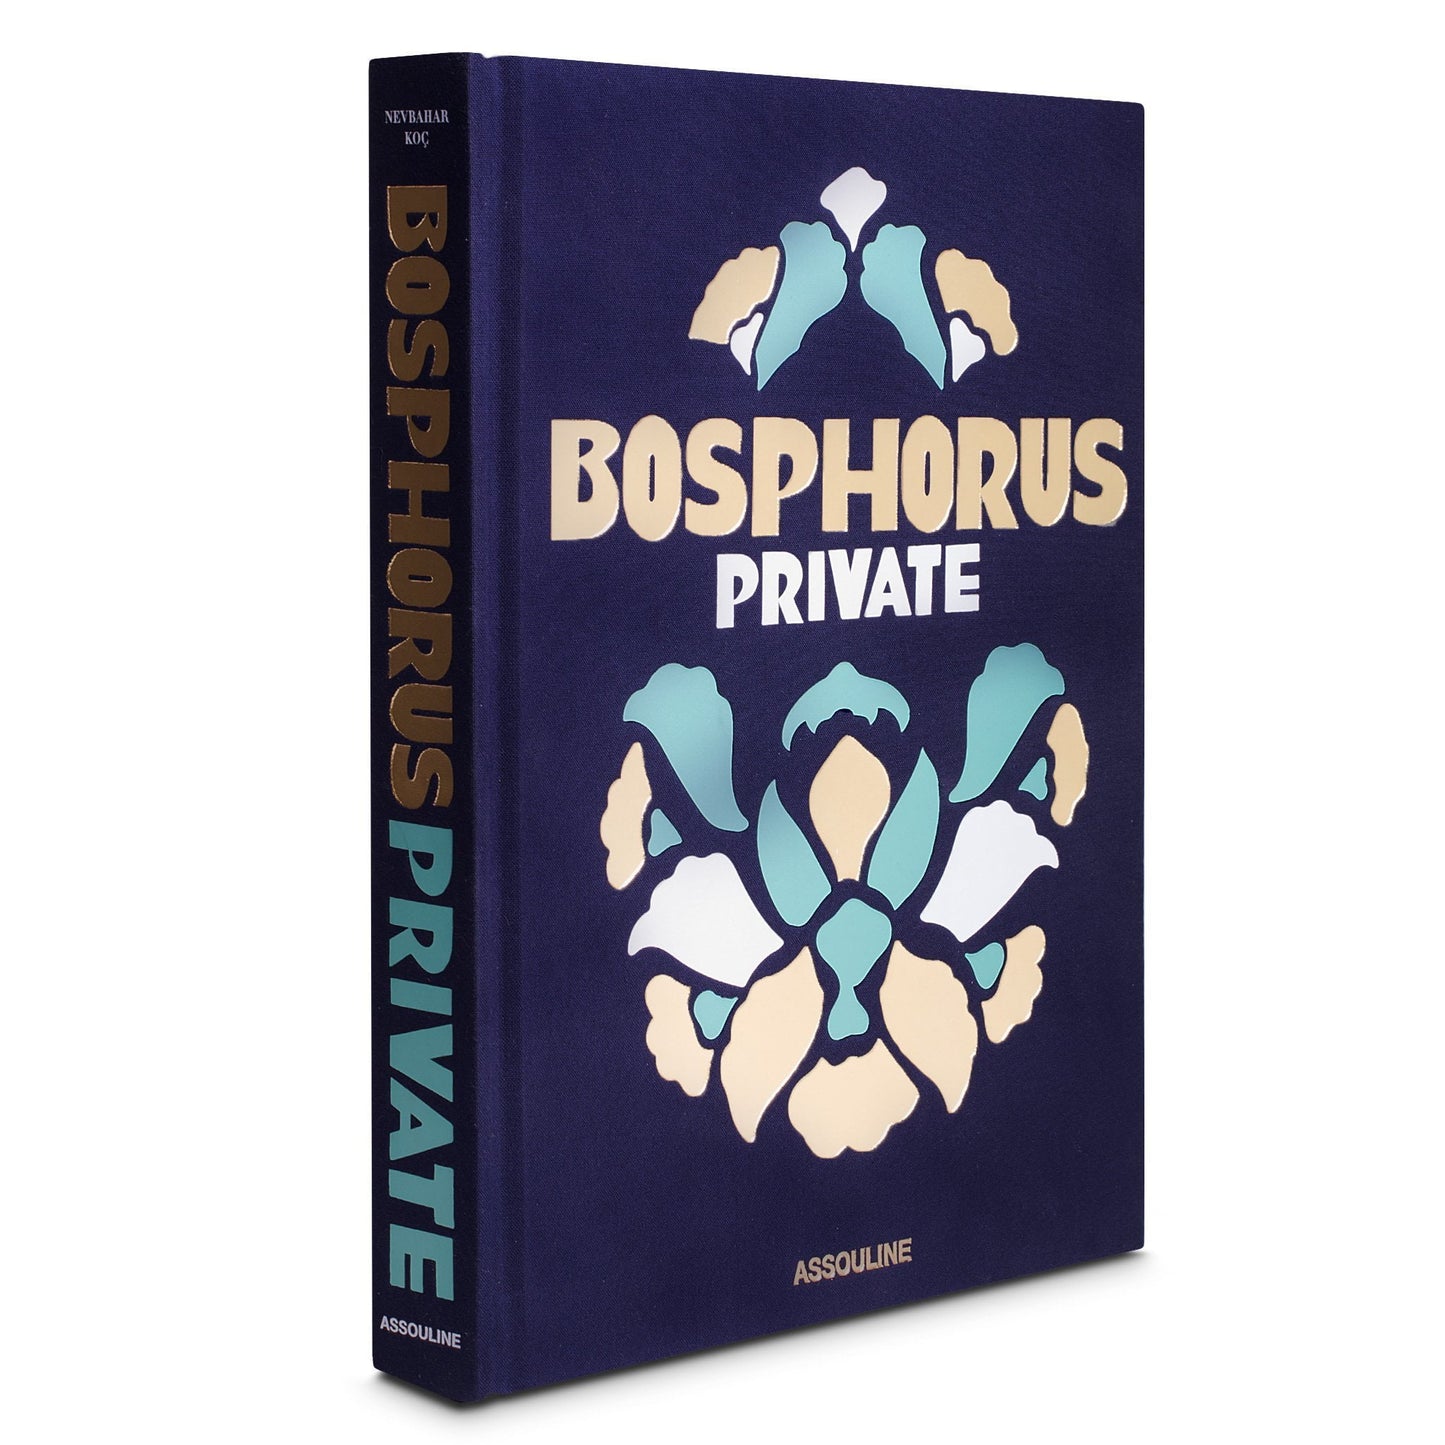 BOSPHORUS PRIVATE BOOK - $105